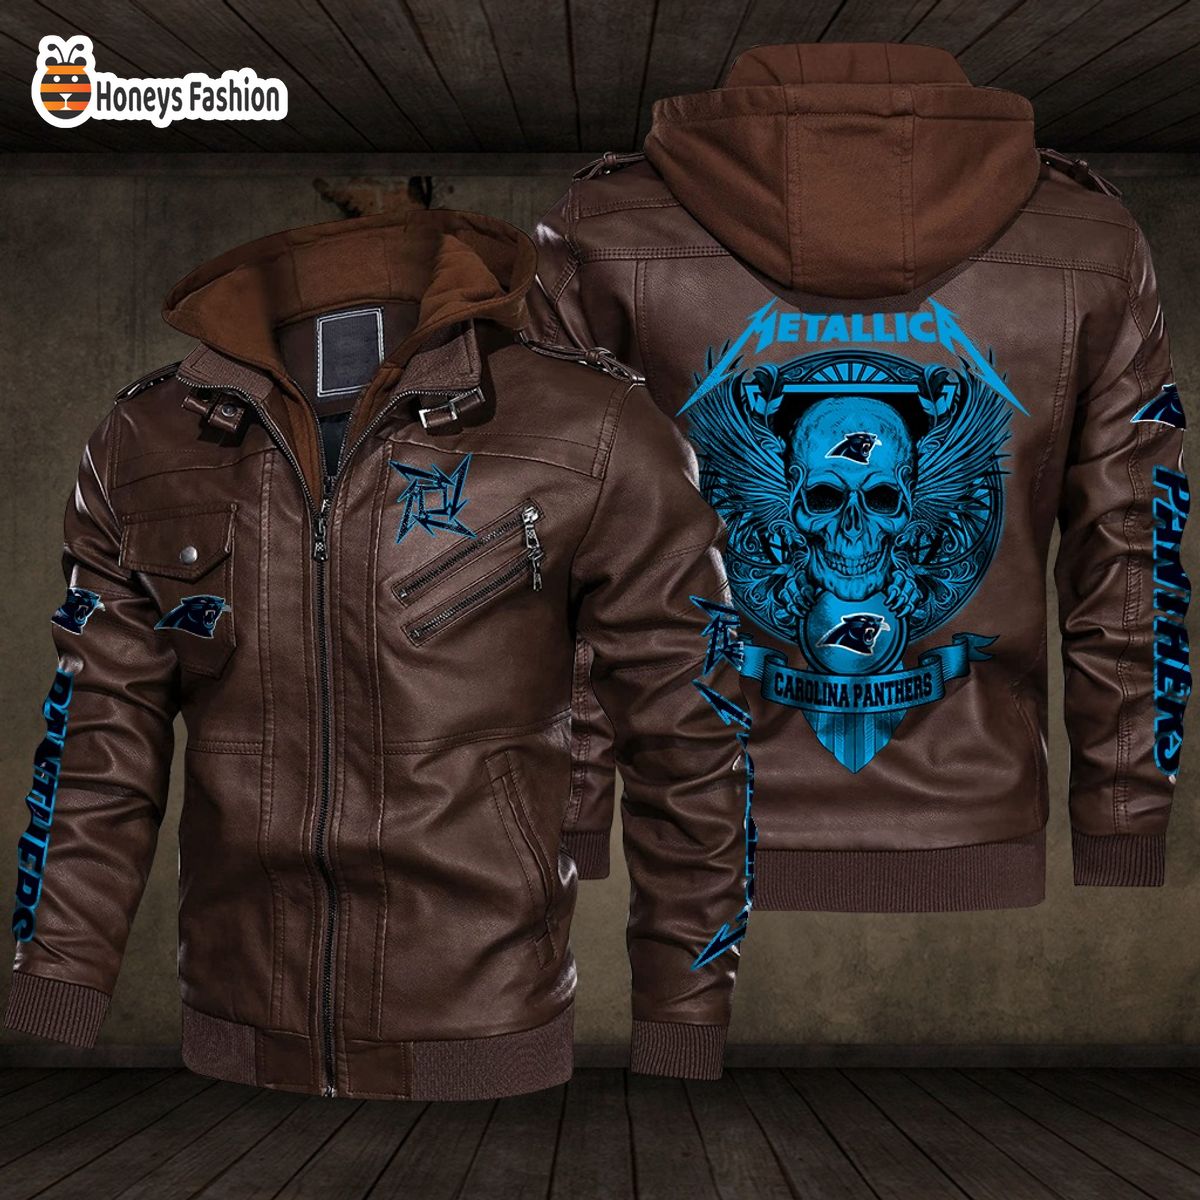 Carolina Panthers NFL Metallica 2D PU Leather Jacket